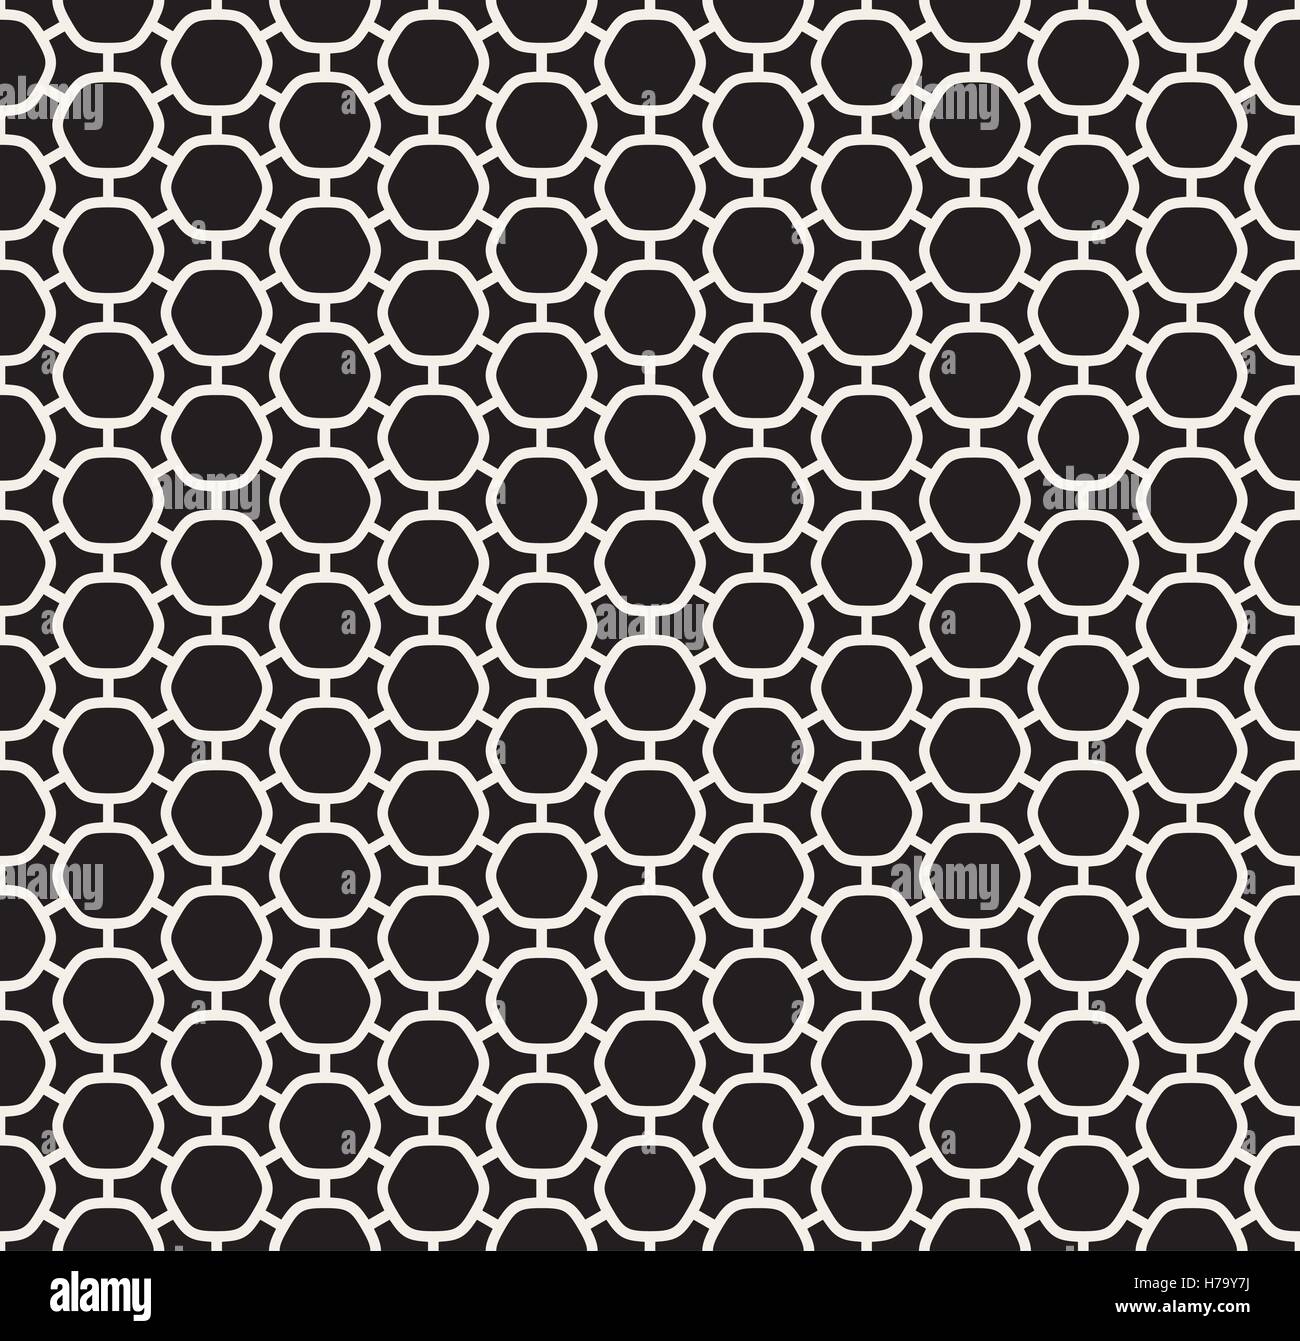 Seamless Vector arrondi noir et blanc ligne hexagonal simple modèle Connected Grid Illustration de Vecteur